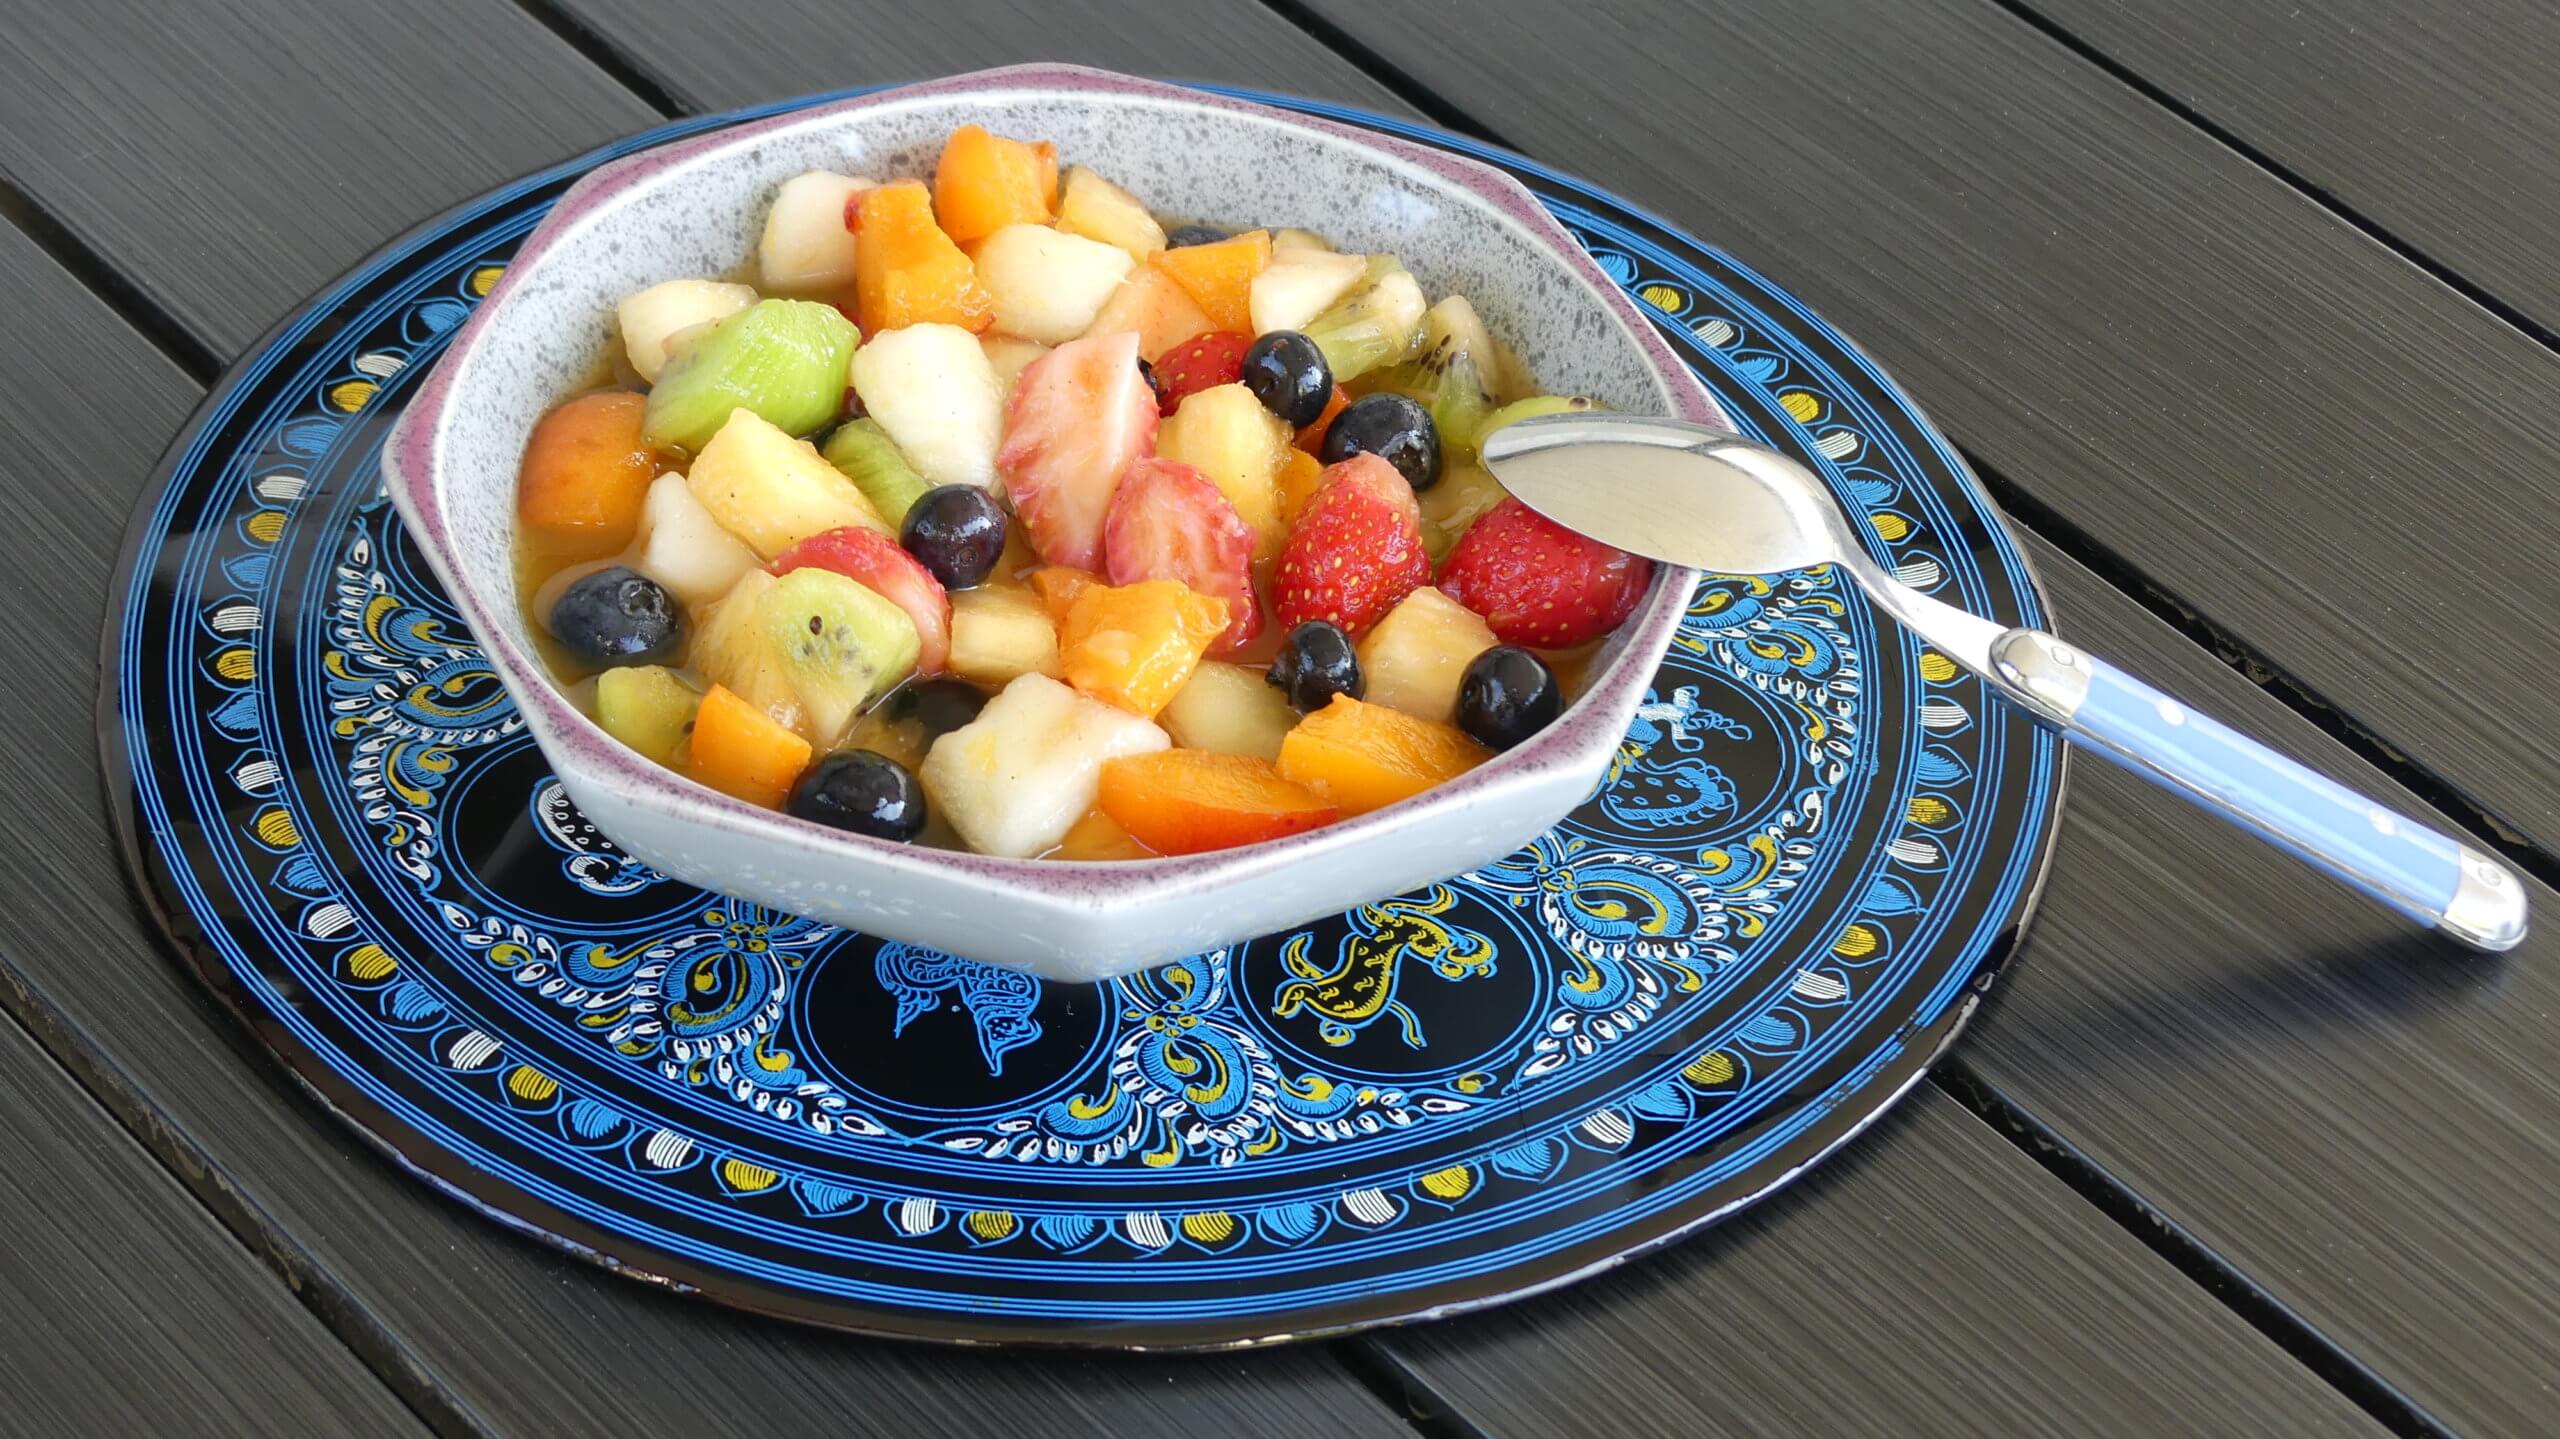 Sirop vanillé pour salade de fruits d'été - Les Délices de Mimm